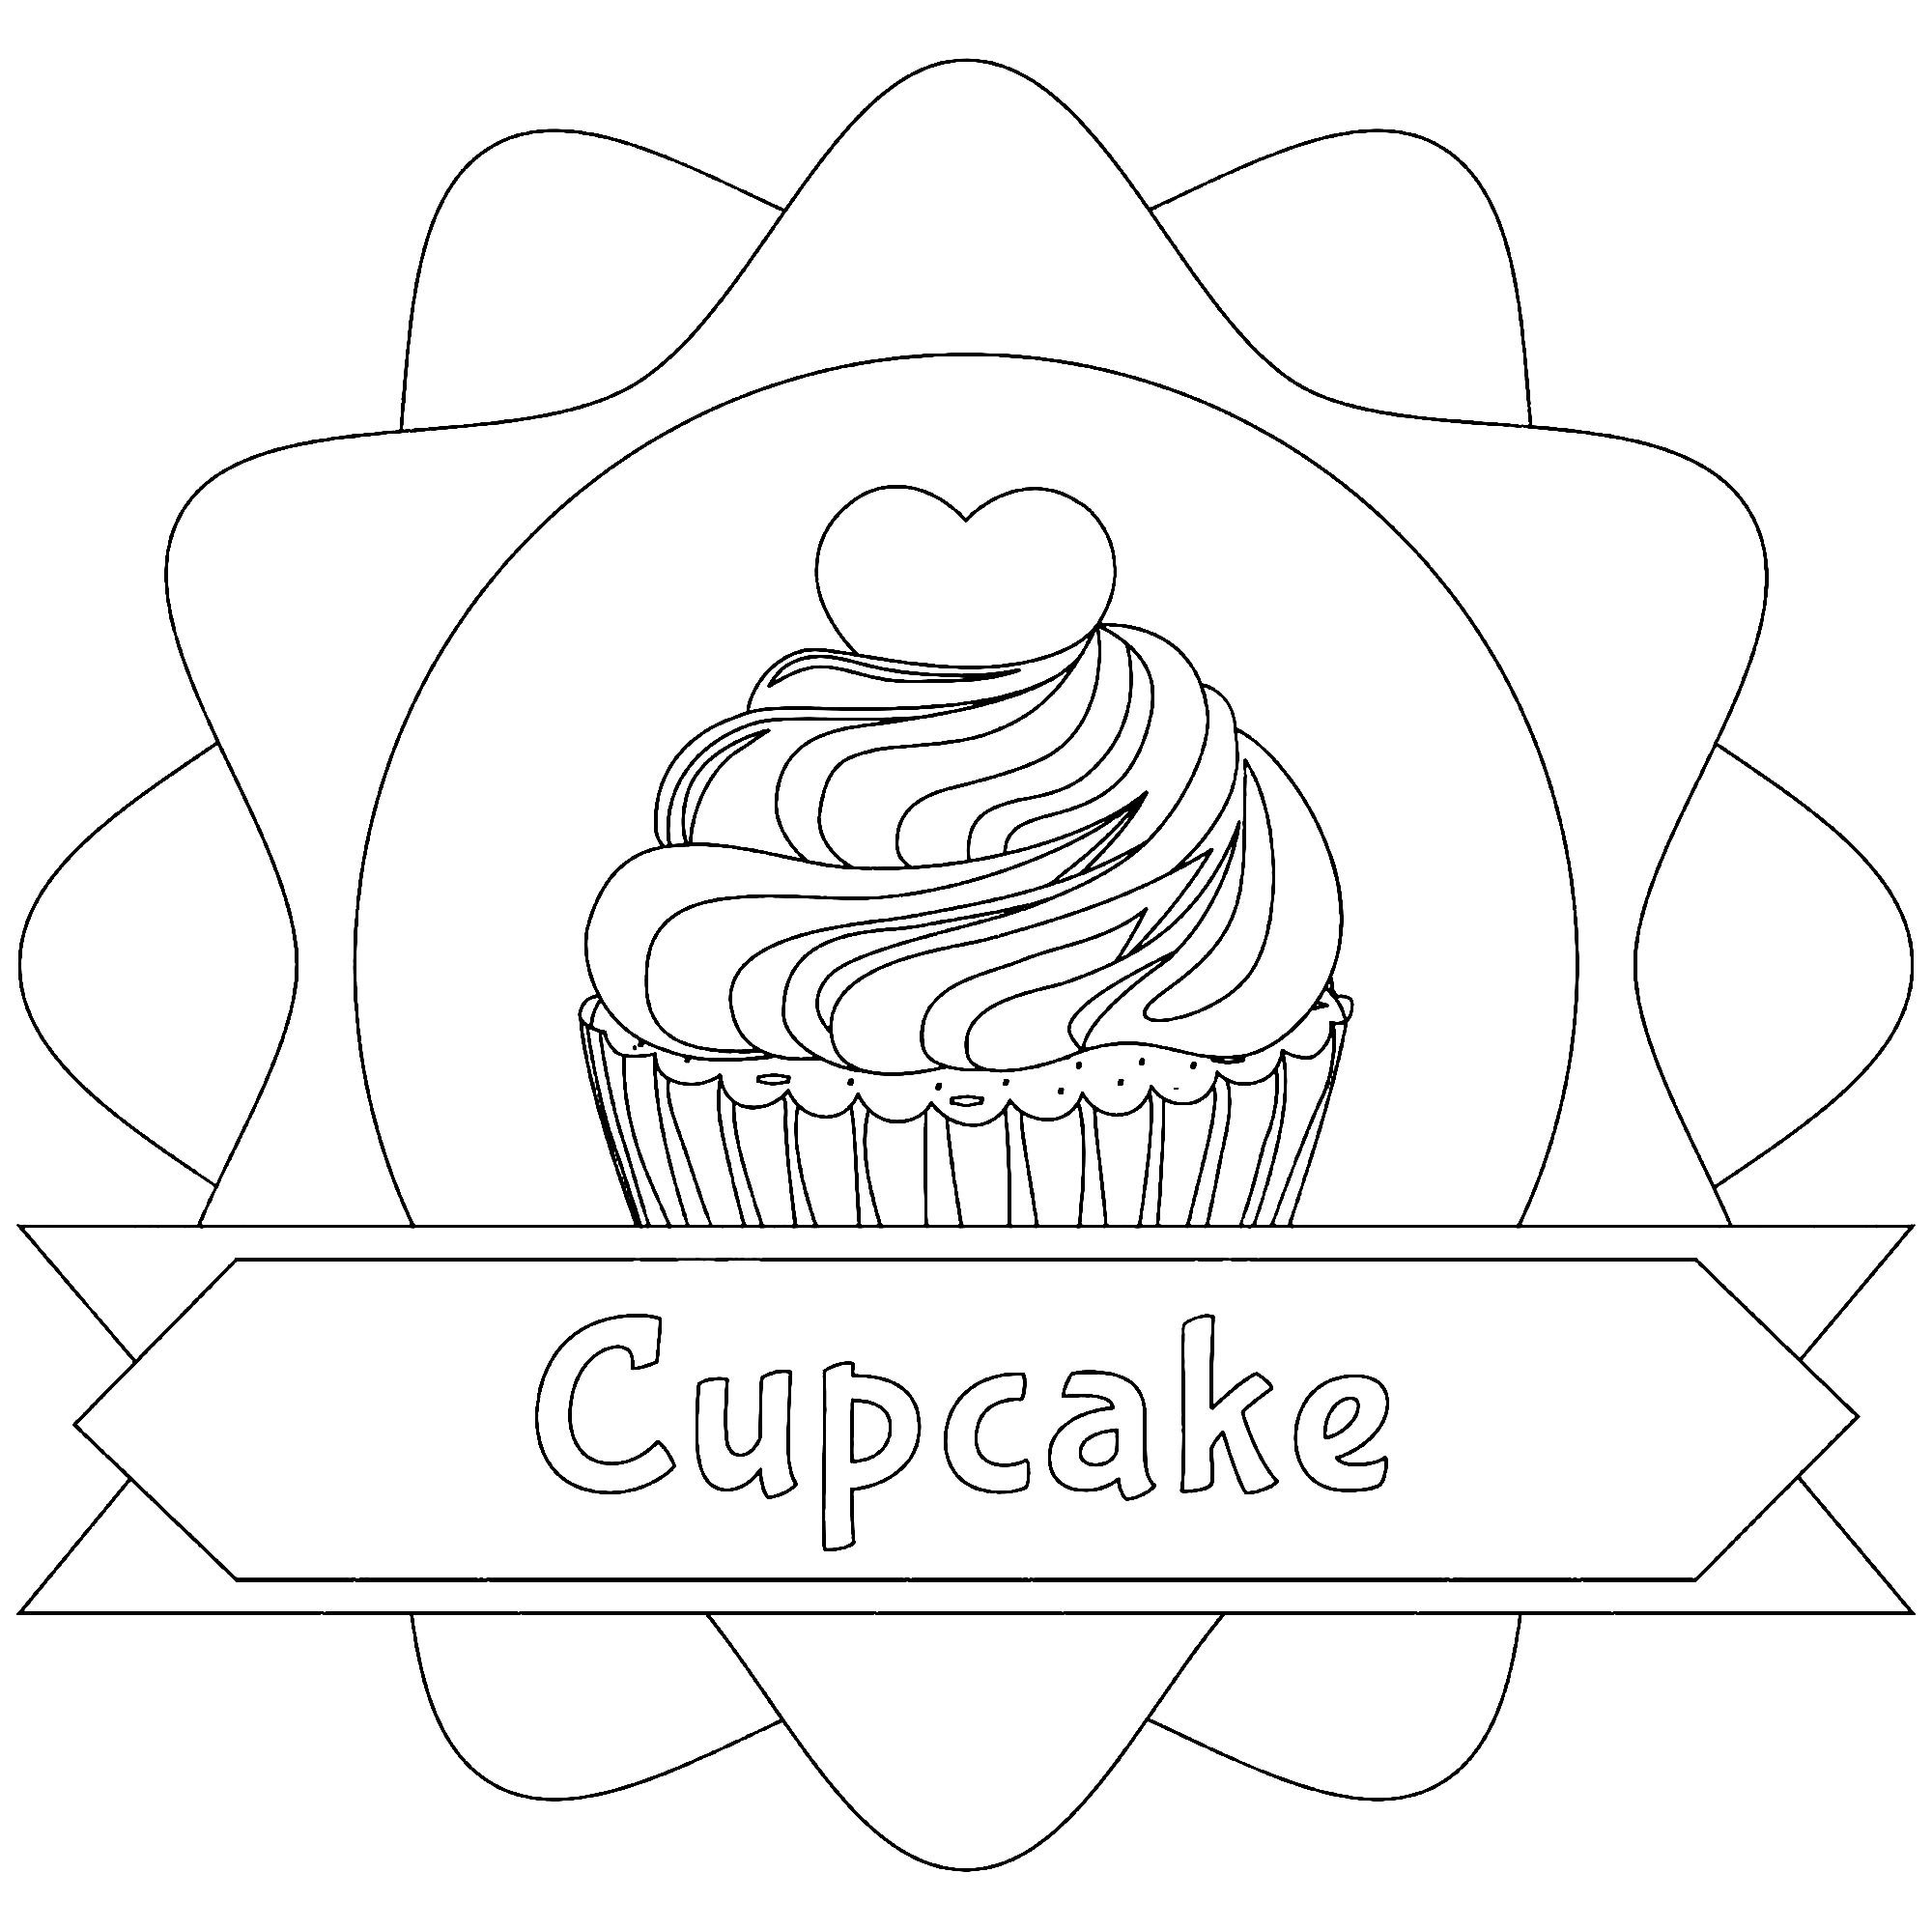 Uma bela ilustração com um cupcake e o texto correspondente